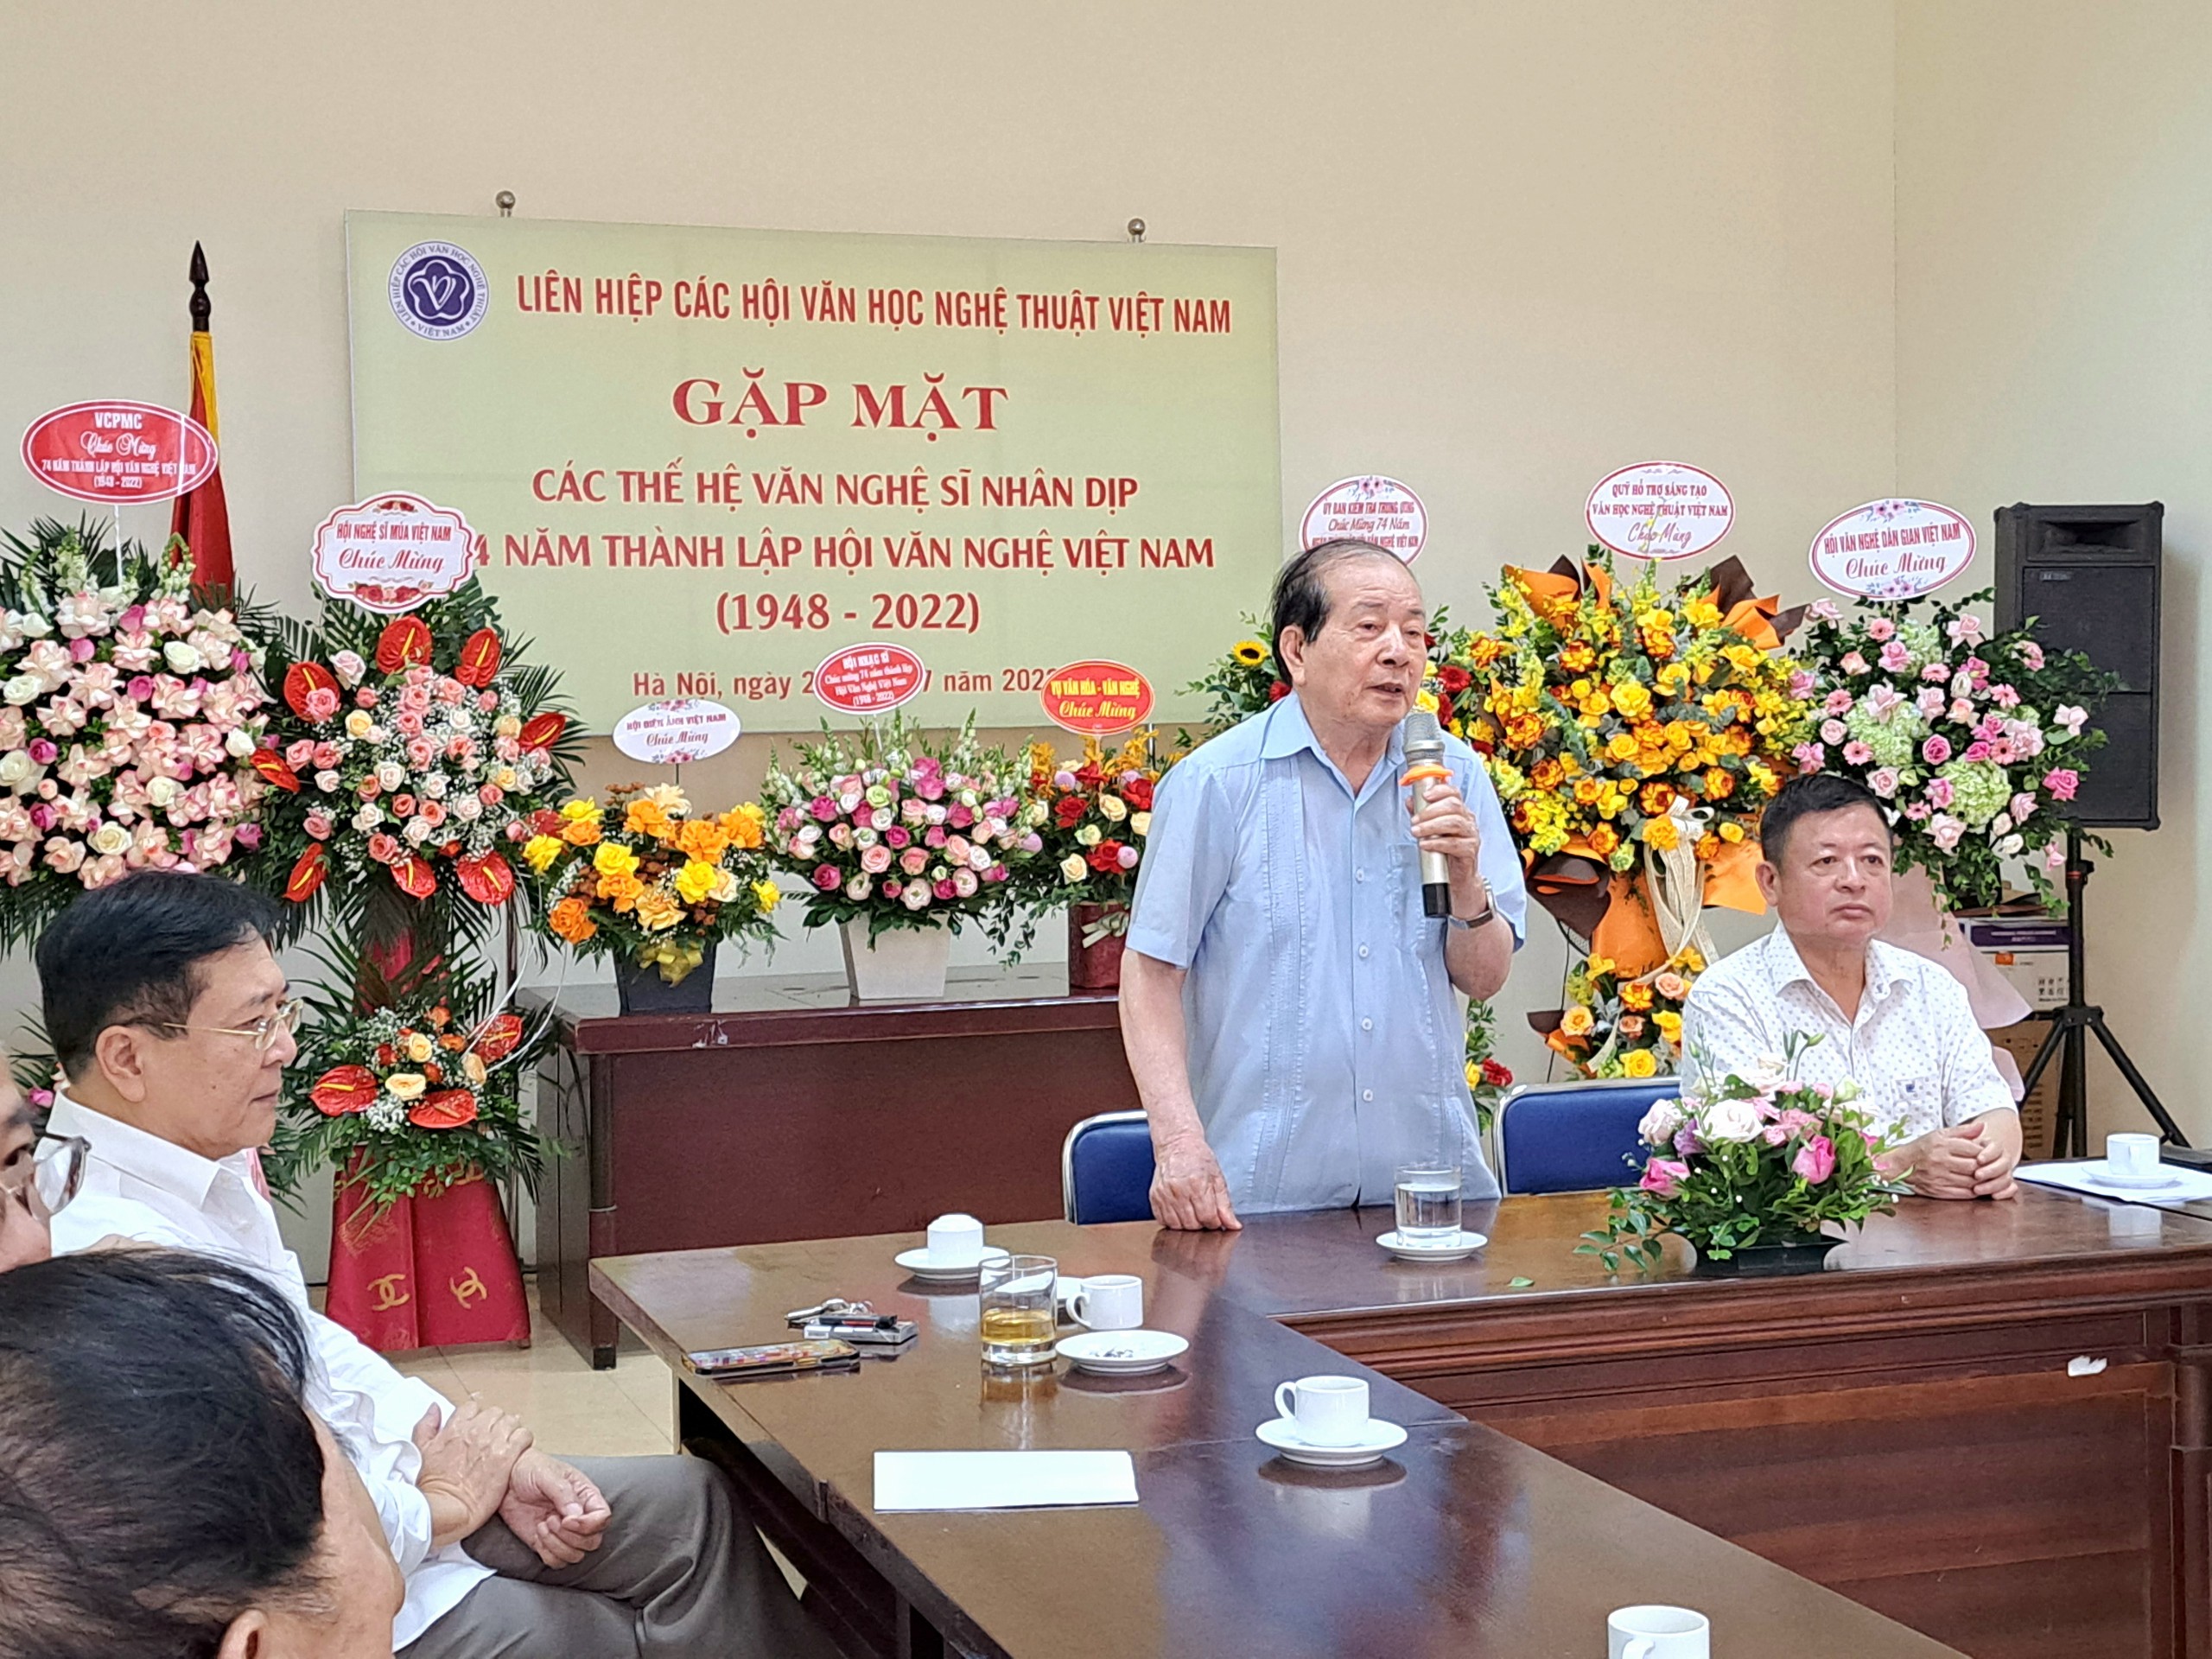 Gặp mặt kỷ niệm 74 năm thành lập Hội Văn nghệ Việt Nam - 2